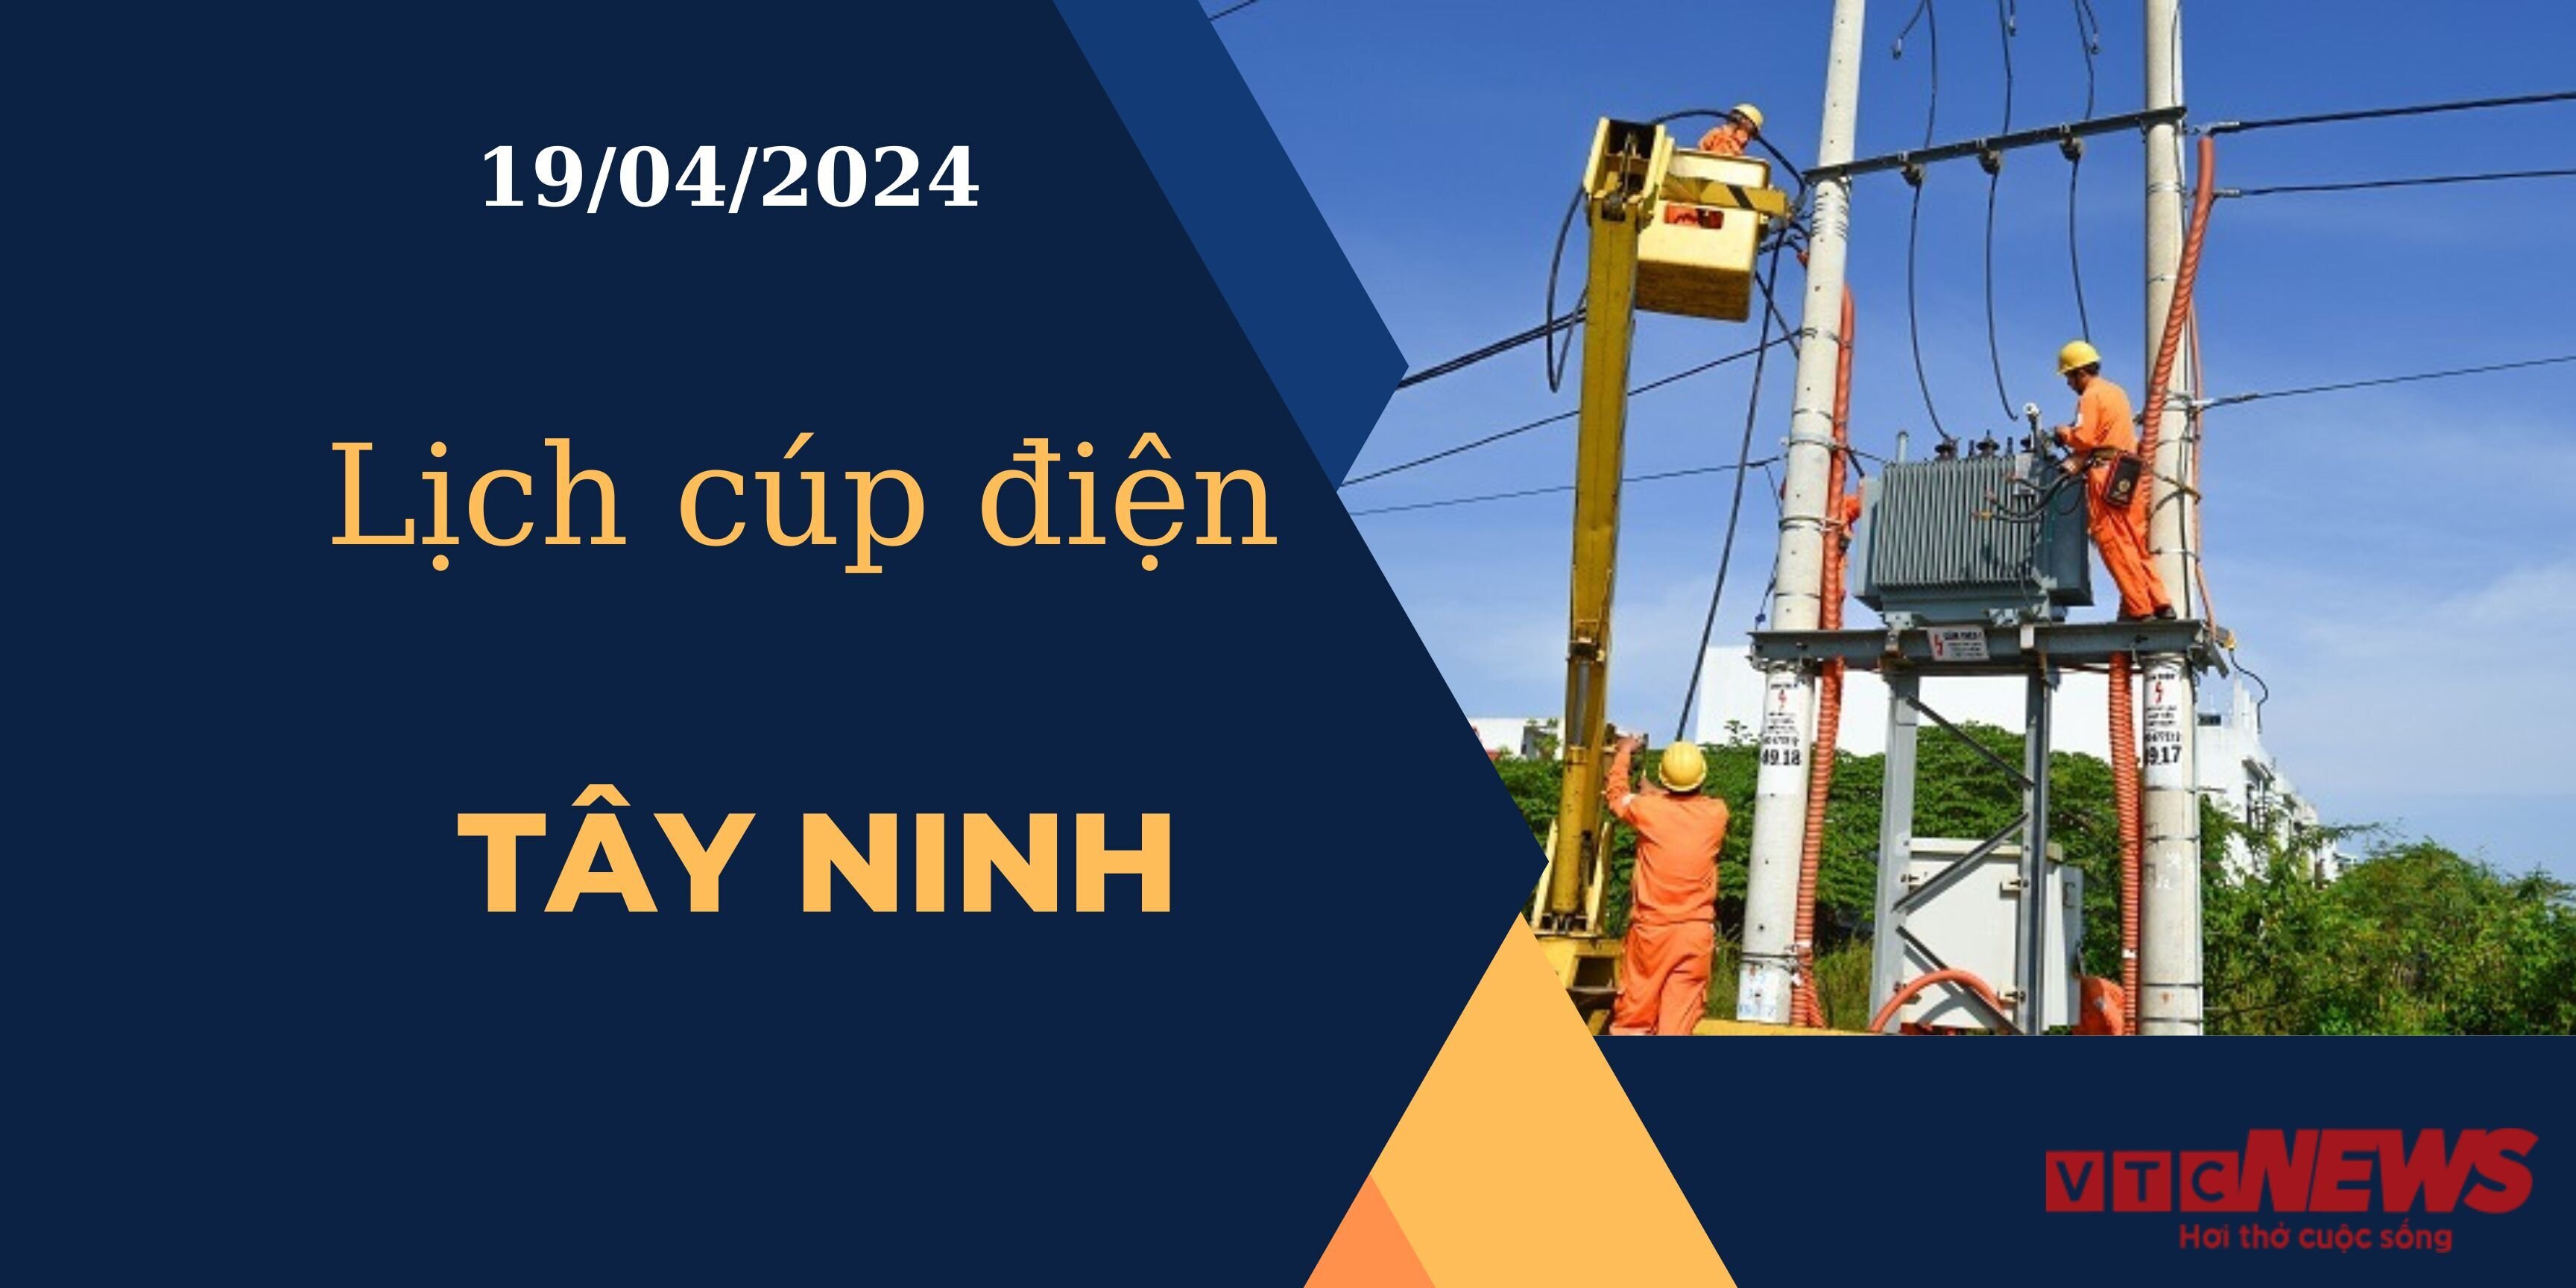 Lịch cúp điện hôm nay ngày 19/04/2024 tại Tây Ninh